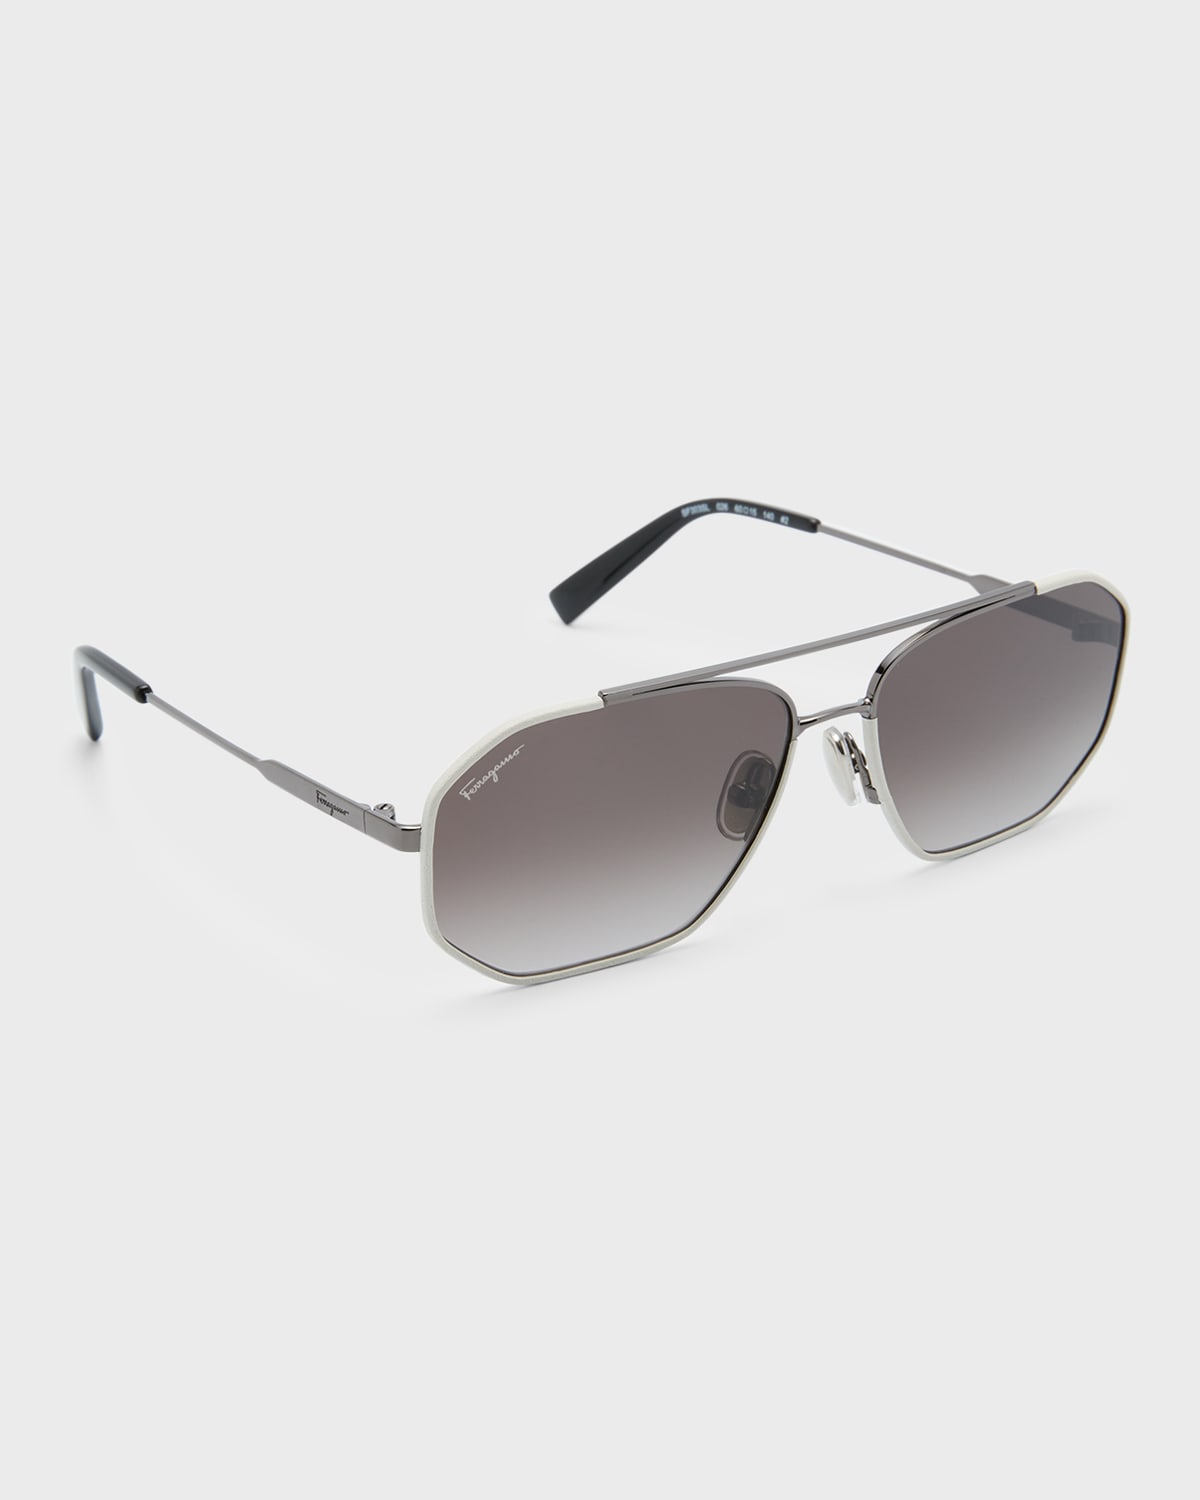 Ferragamo Men's Metal And Leather Navigator Sunglasses In Dark Ruthenium Wh